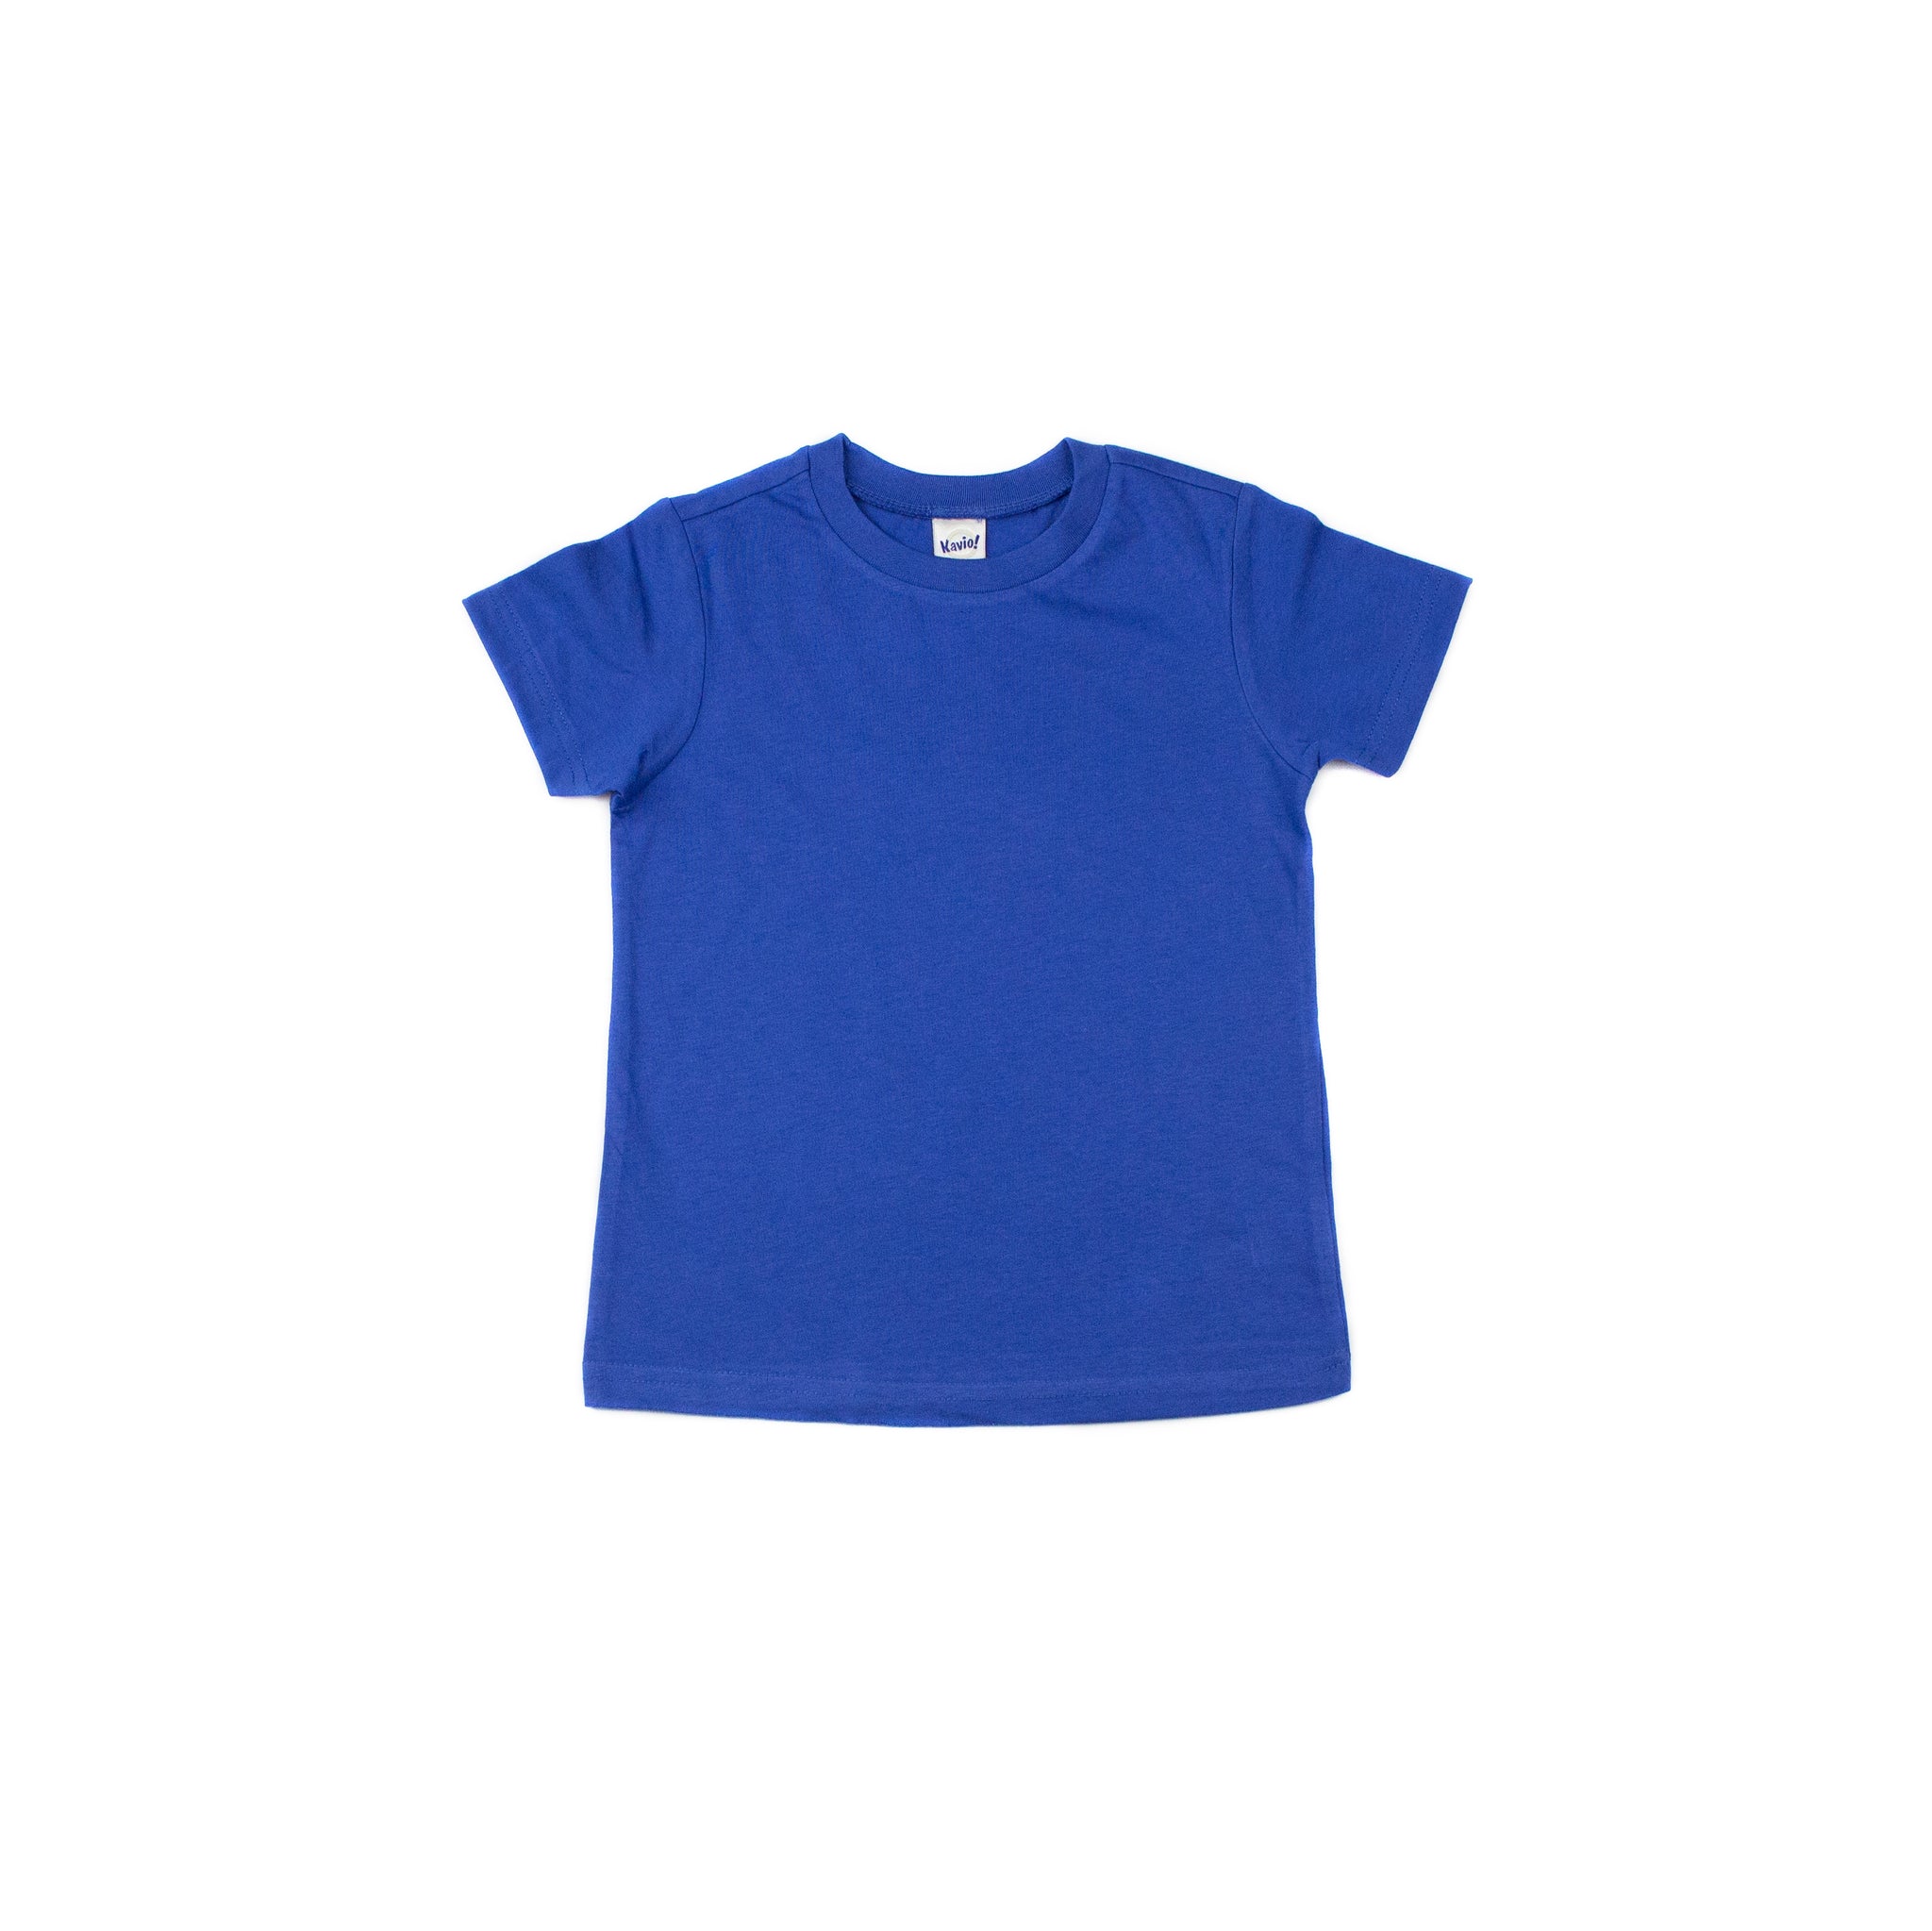 Kids Royal Blue short sleeve T-shirt